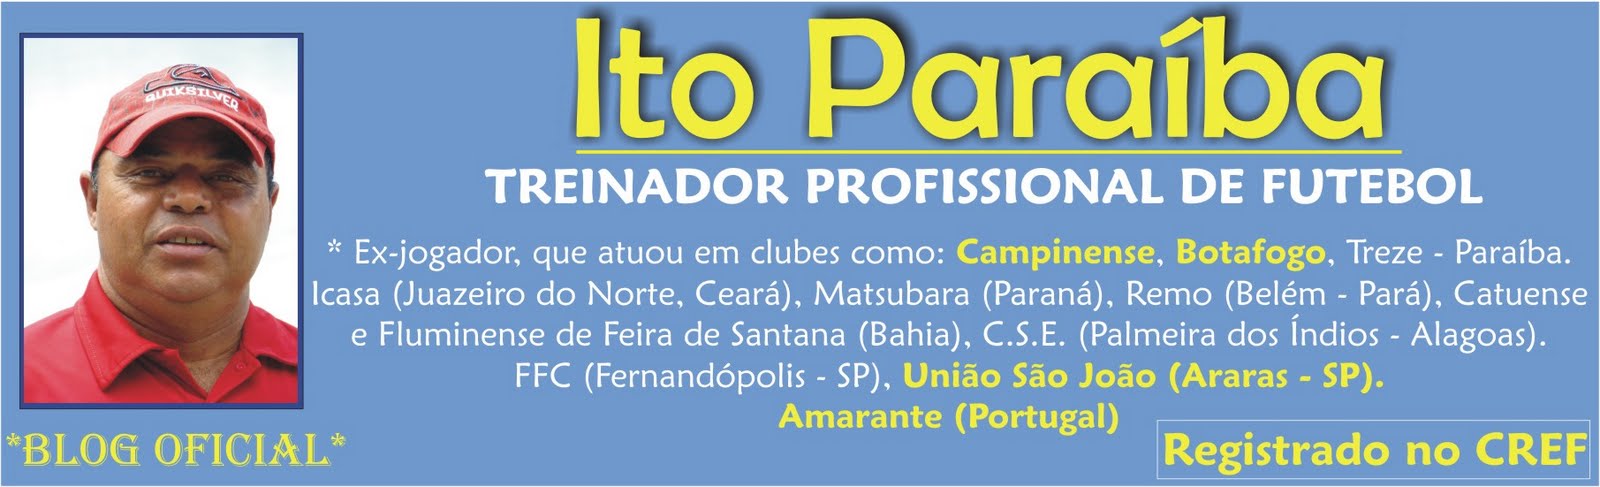 Ito Paraíba